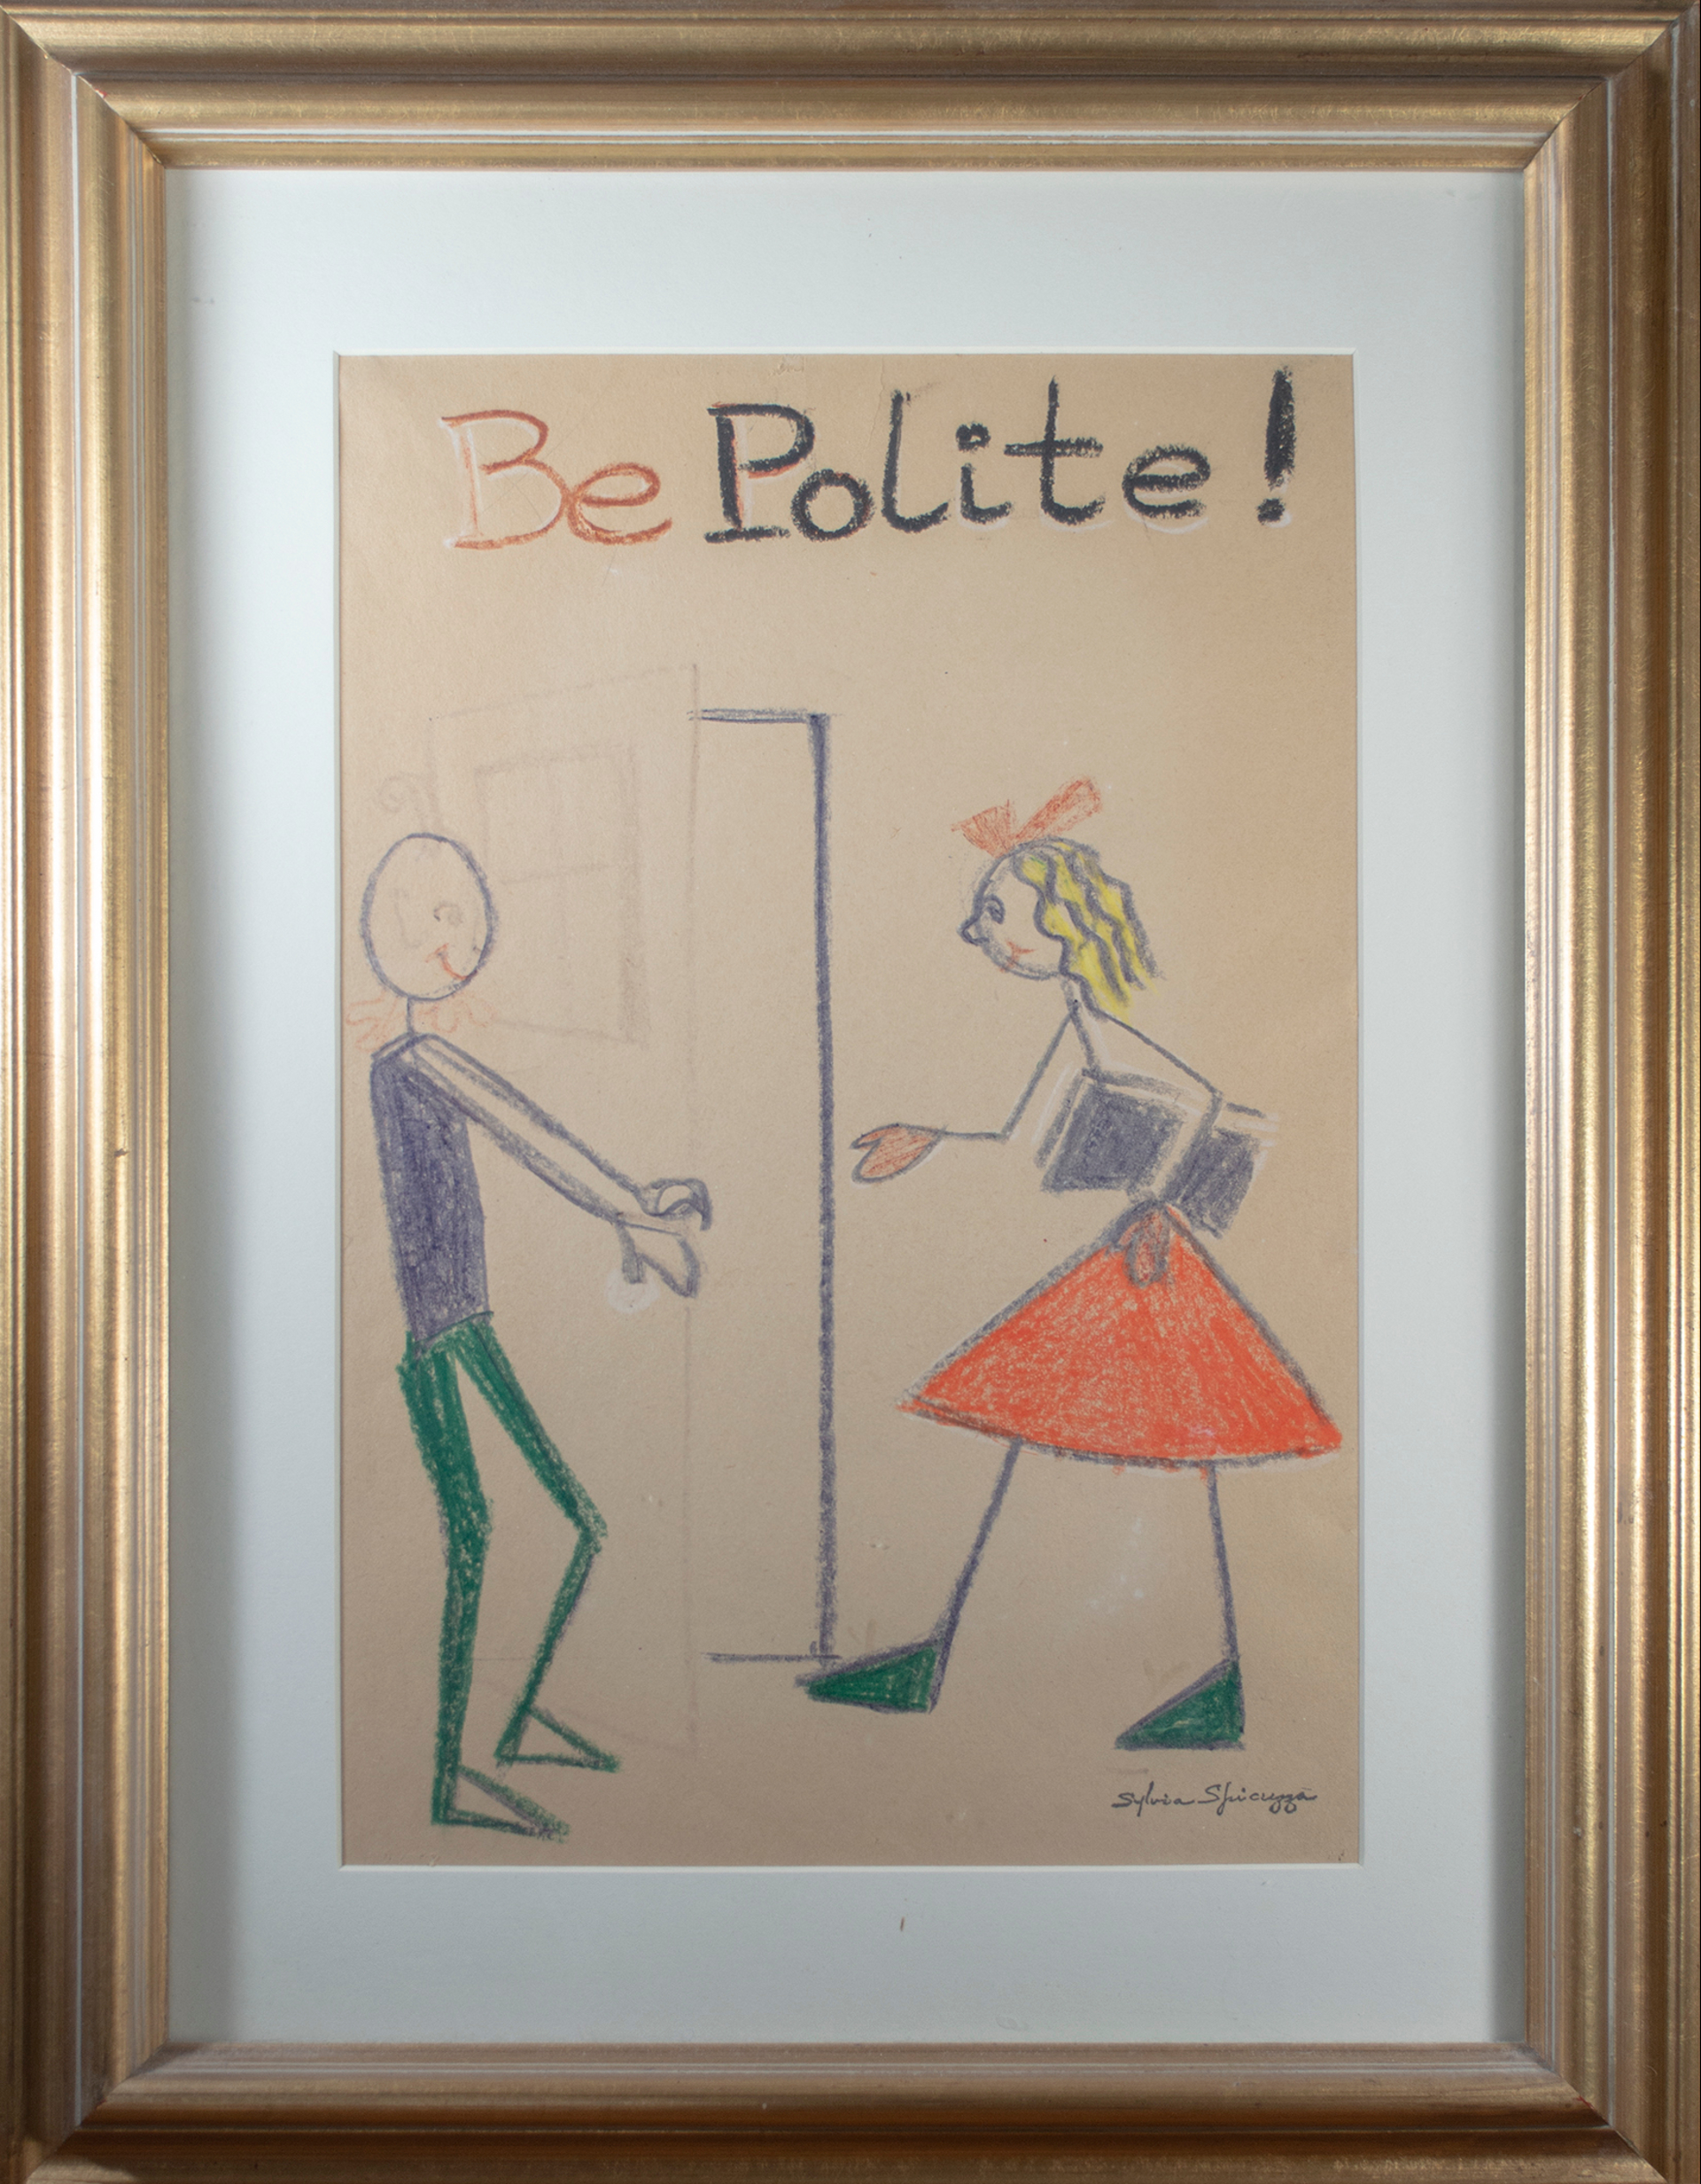 Be Polite! by Sylvia Spicuzza